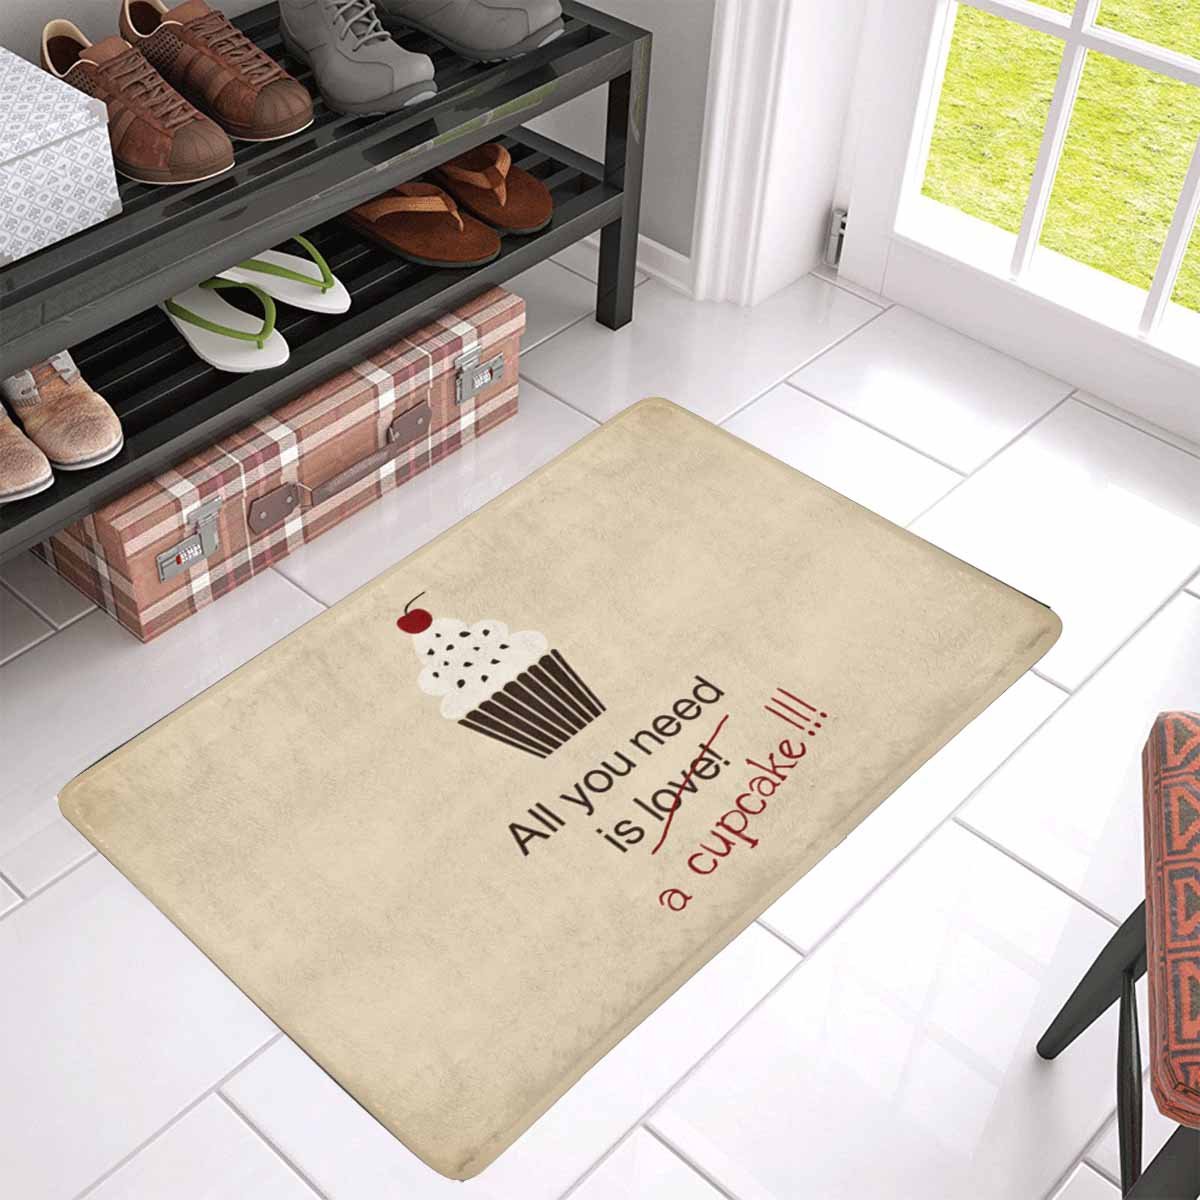 MKHERT Funny Quotes All You Need is a Cupcake Doormat Rug Home Decor Floor  Mat Bath Mat 30x18 inch - Walmart.com